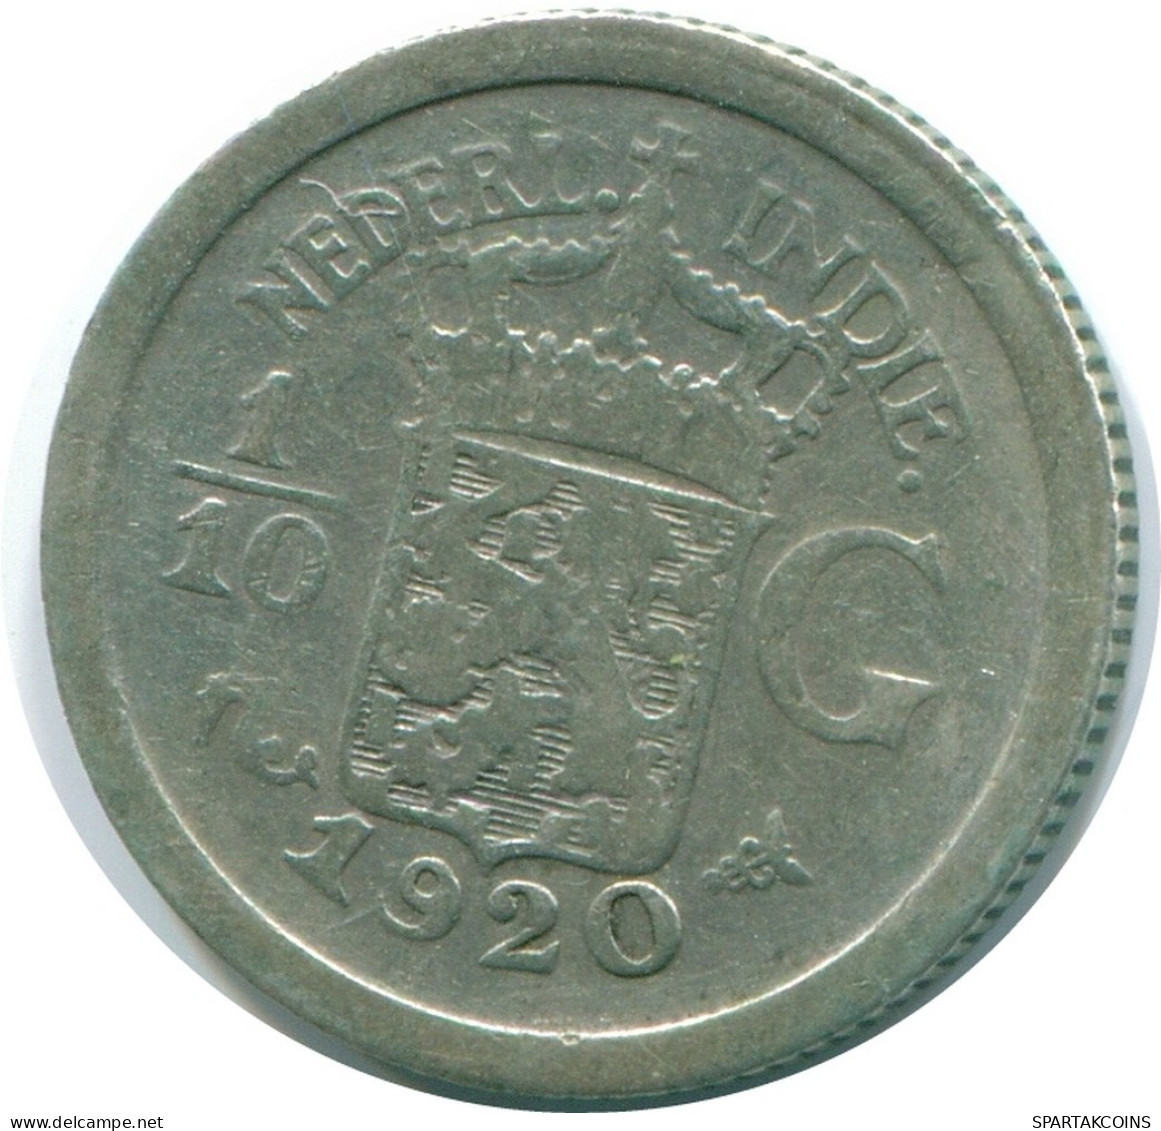 1/10 GULDEN 1920 INDIAS ORIENTALES DE LOS PAÍSES BAJOS PLATA #NL13384.3.E.A - Dutch East Indies